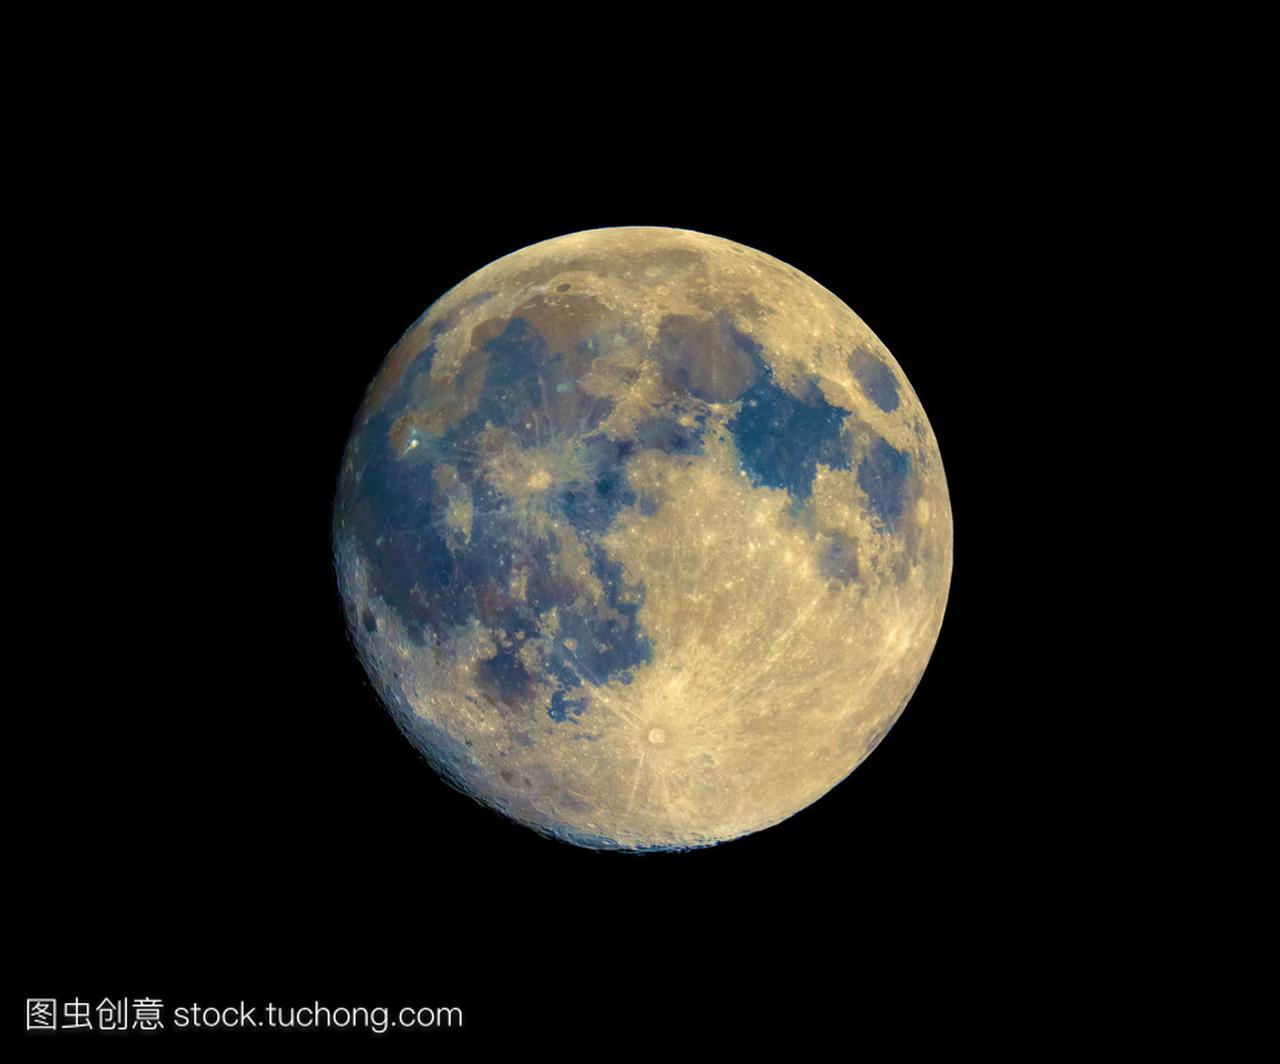 用增强色彩的望远镜看到的满月